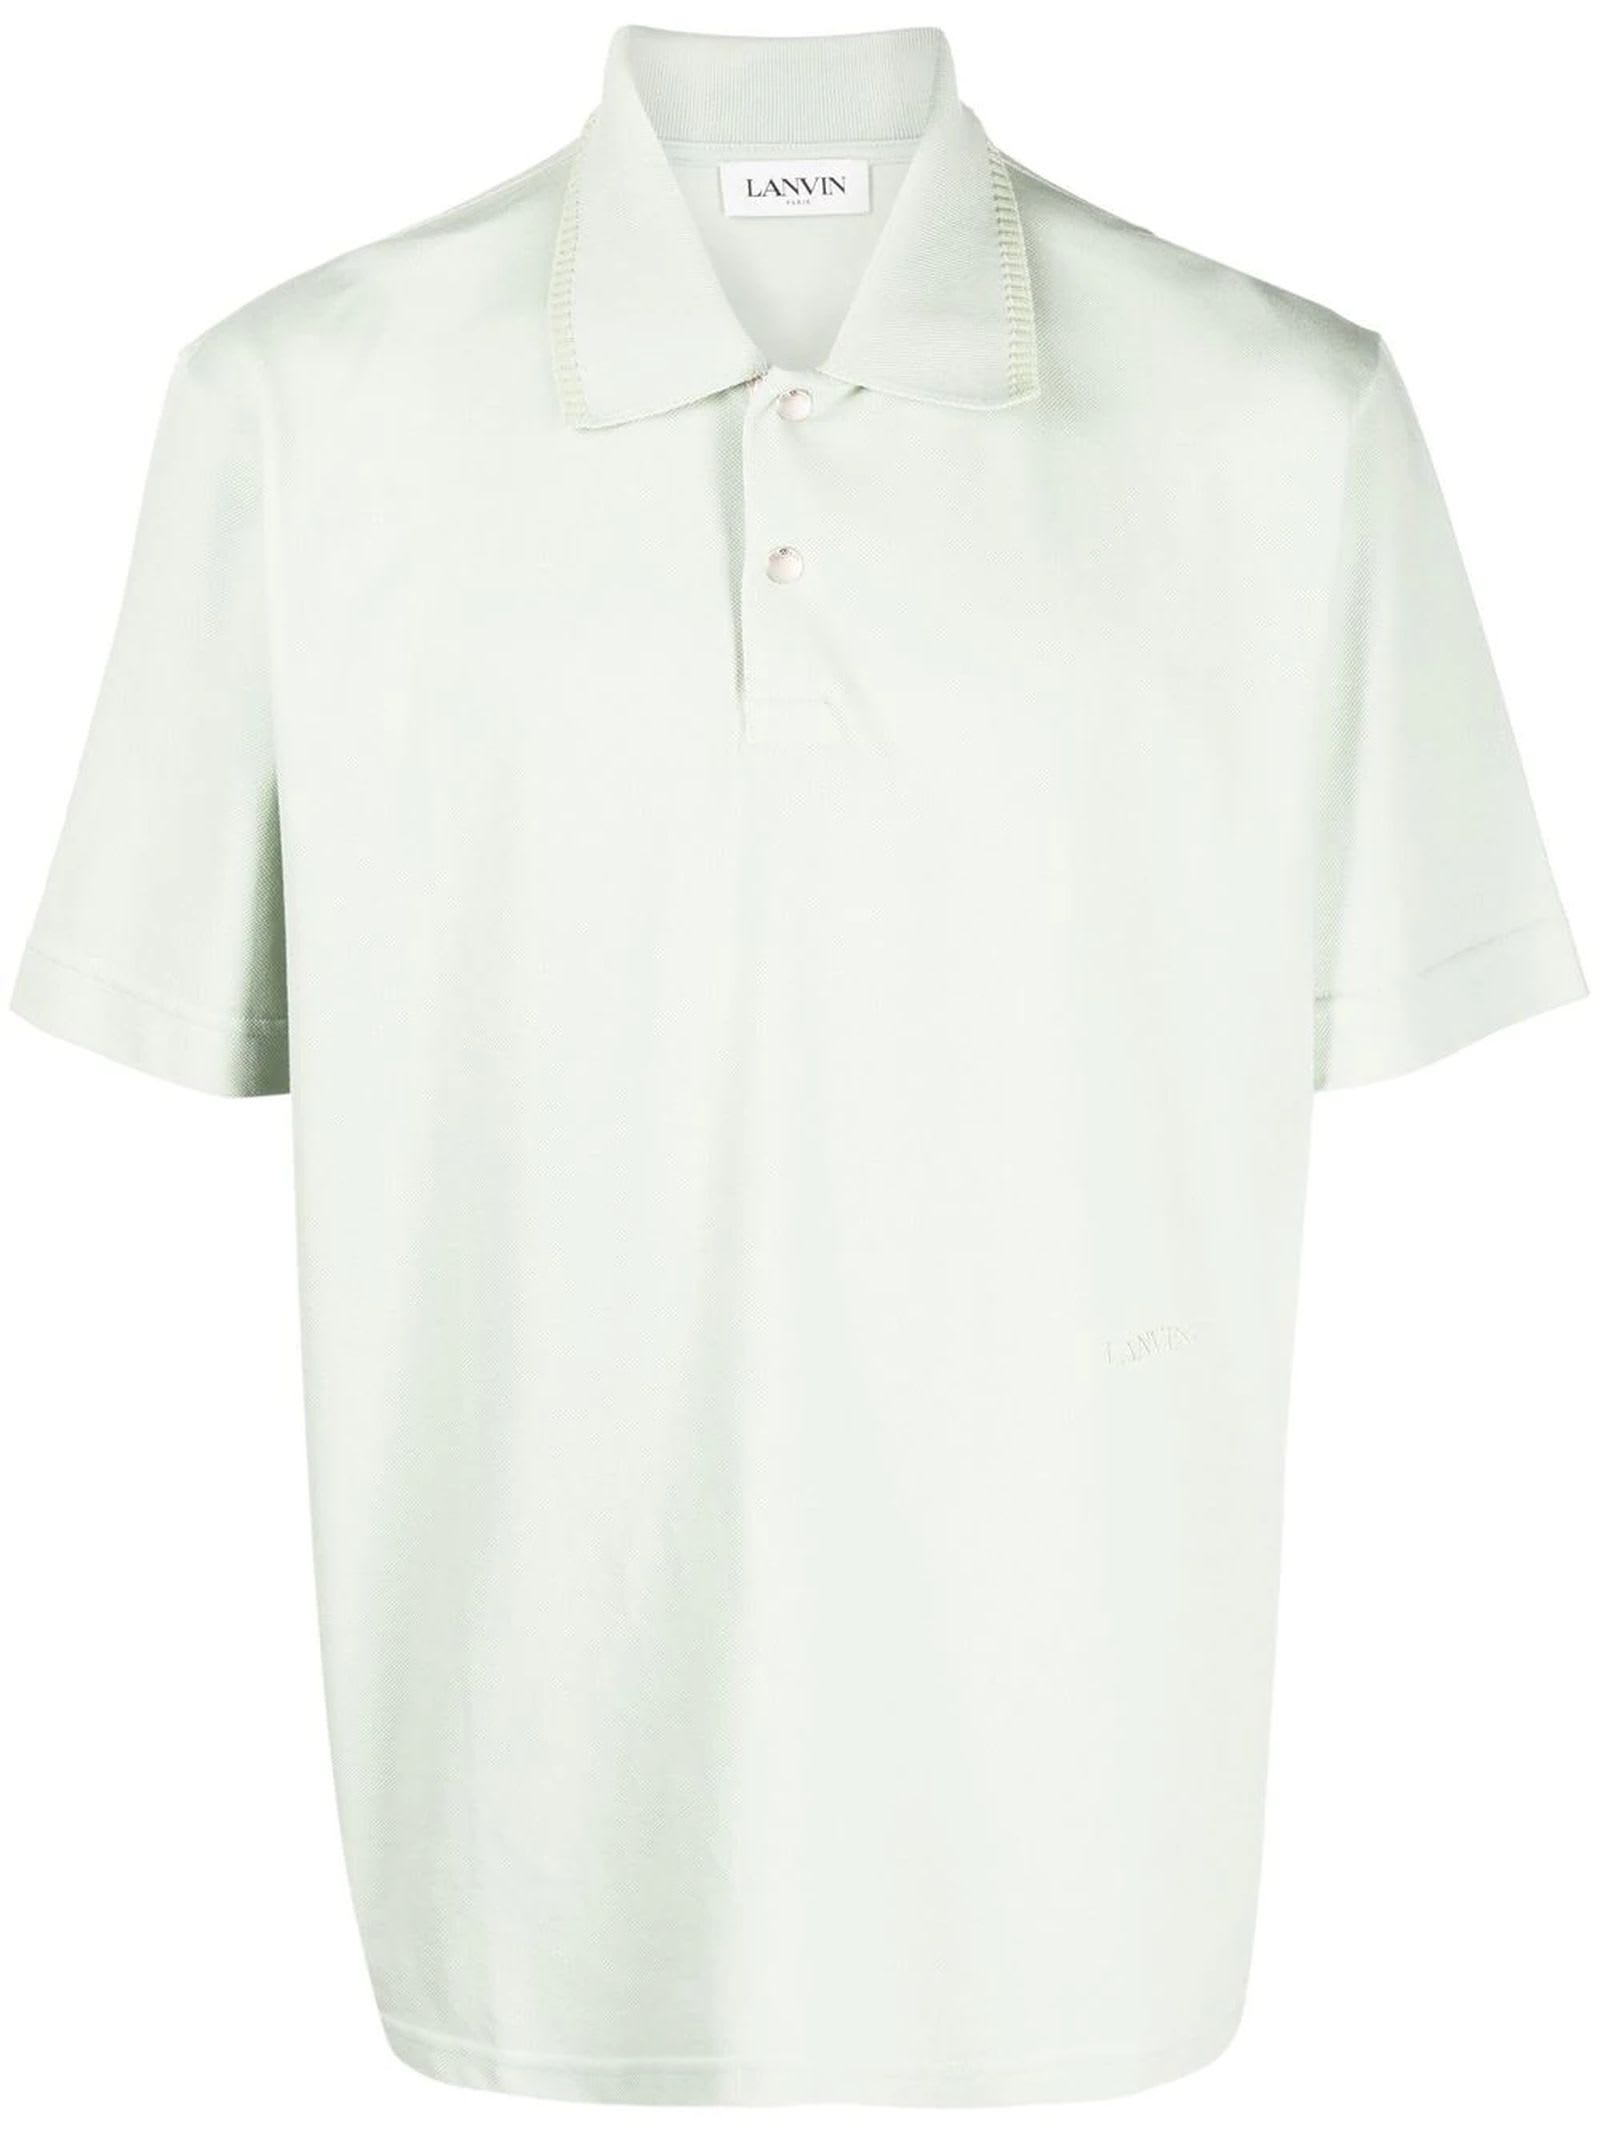 Lanvin Green Cotton Polo Shirt